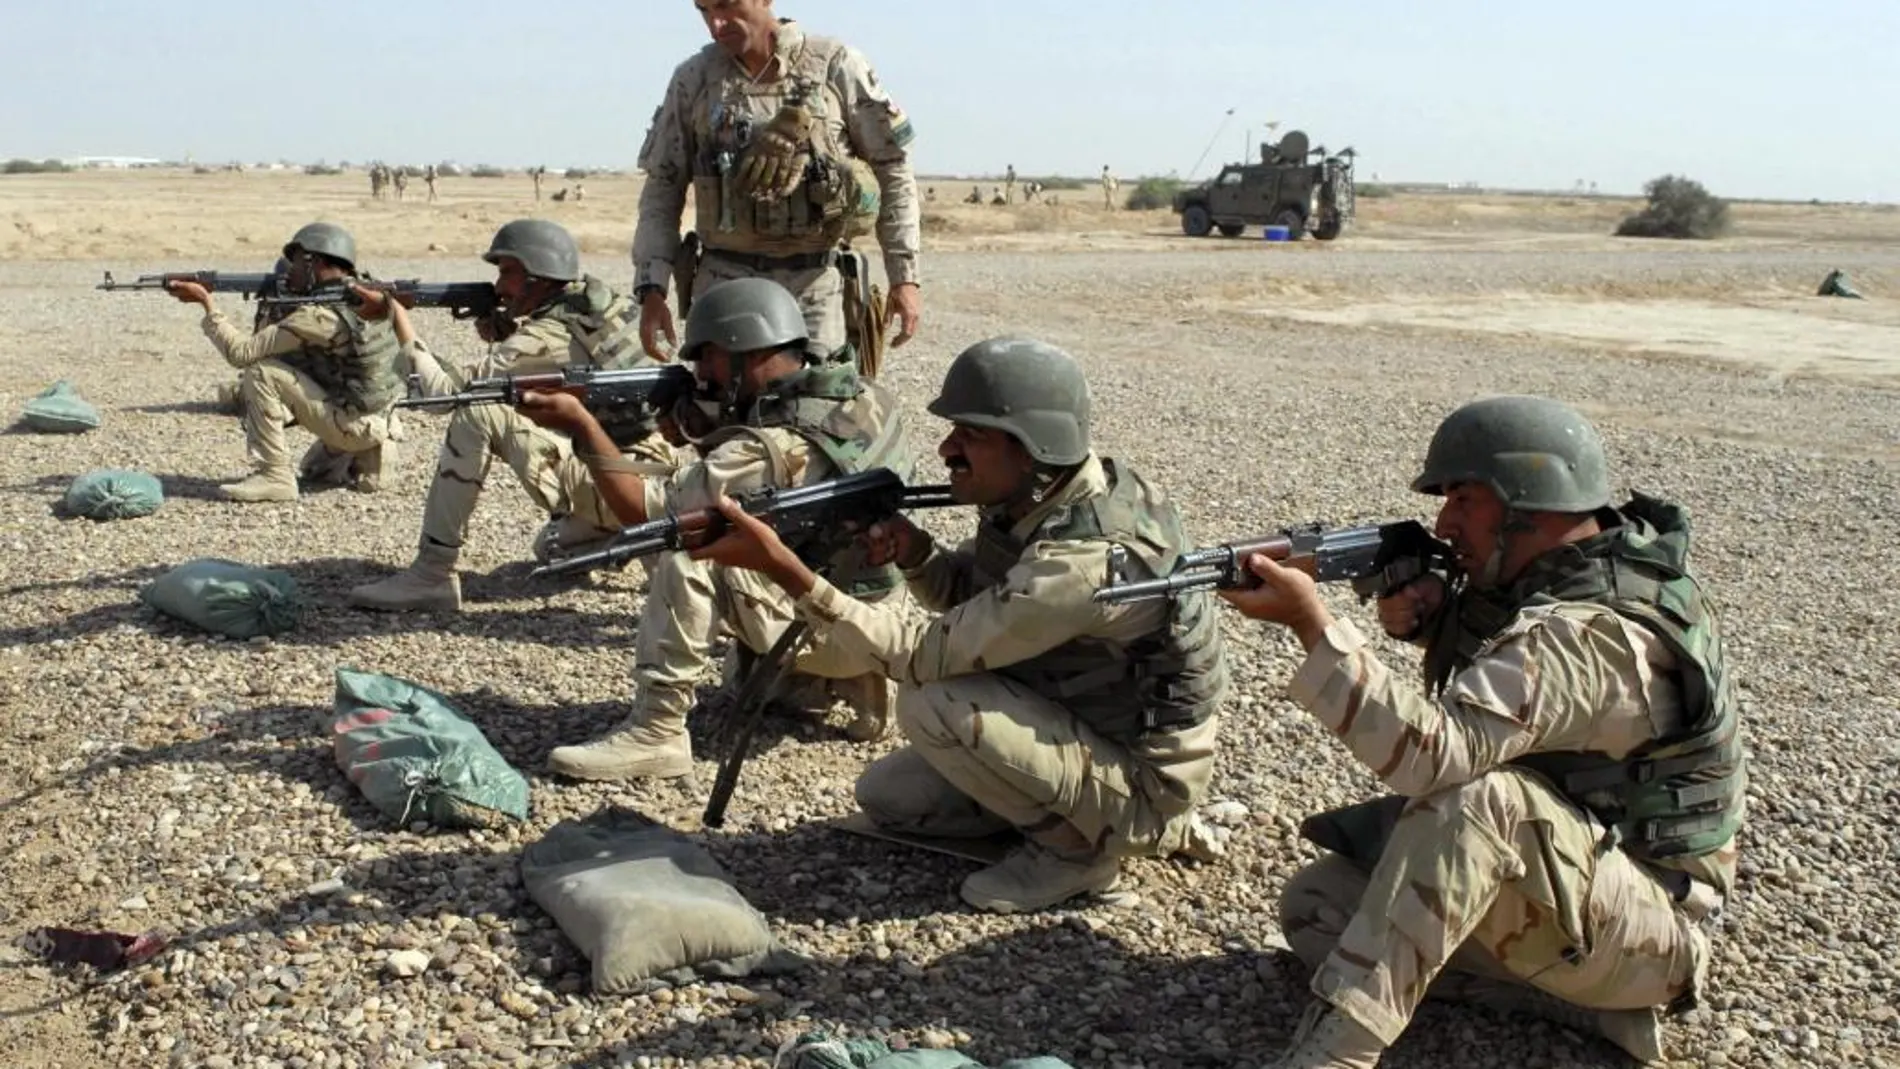 Un legionario adiestra a soldados iraquíes procedentes de la provincia de Niniwaw, situada al norte de Iraq